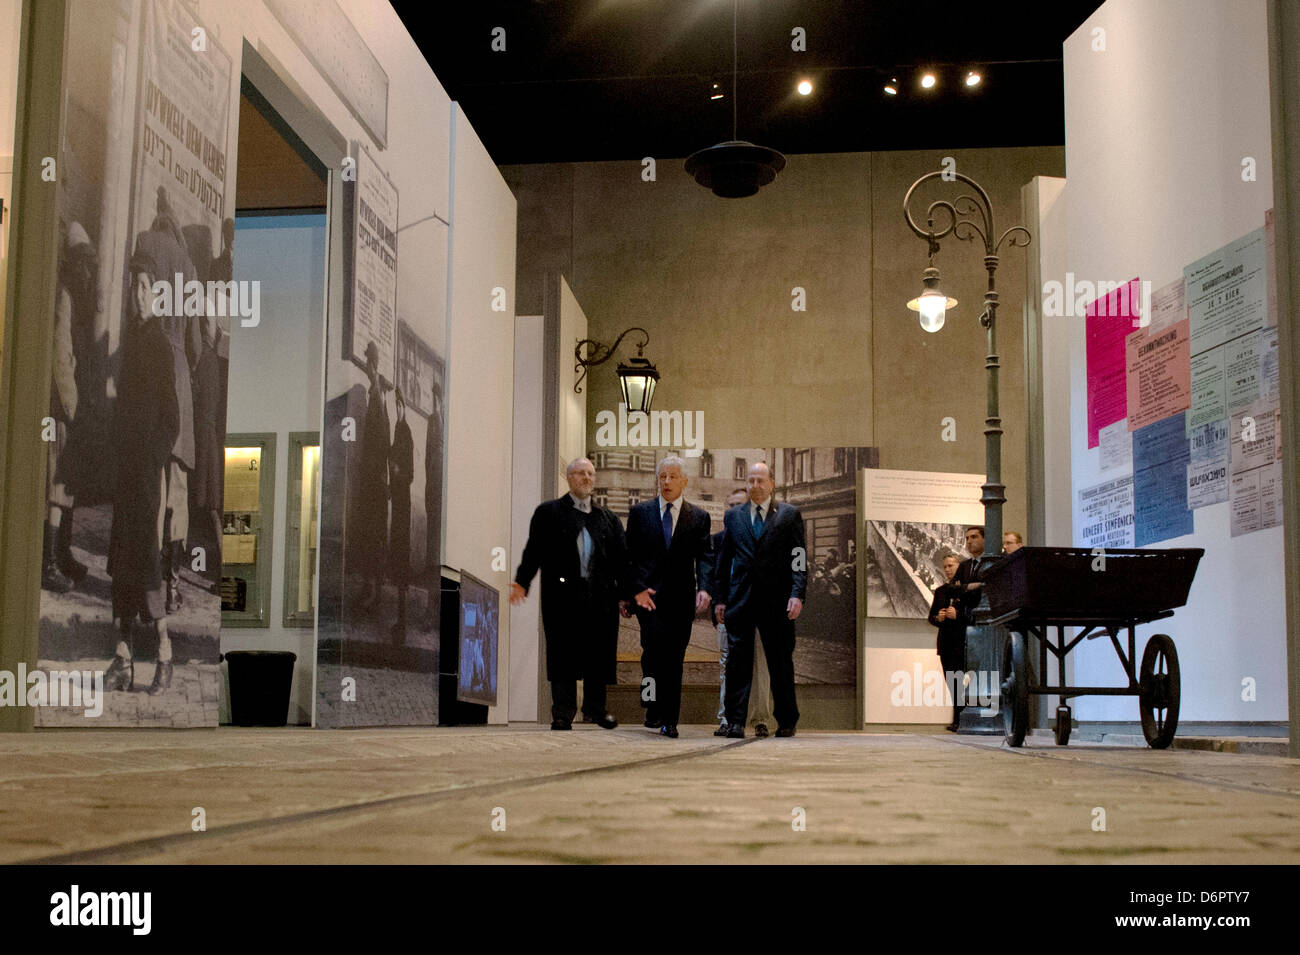 US-Verteidigungsminister Chuck Hagel sieht eine Ausstellung mit israelischen Minister für Verteidigung Moshe Ya'alon und Arzt Robert Ozzett, Direktor der Bibliotheken, bei einem Besuch der Holocaust-Gedenkstätte Yad Vashem 21. April 2013 in Jerusalem, Israel. Hagel ist in Israel auf einer sechstägigen Reise in den Nahen Osten. Stockfoto